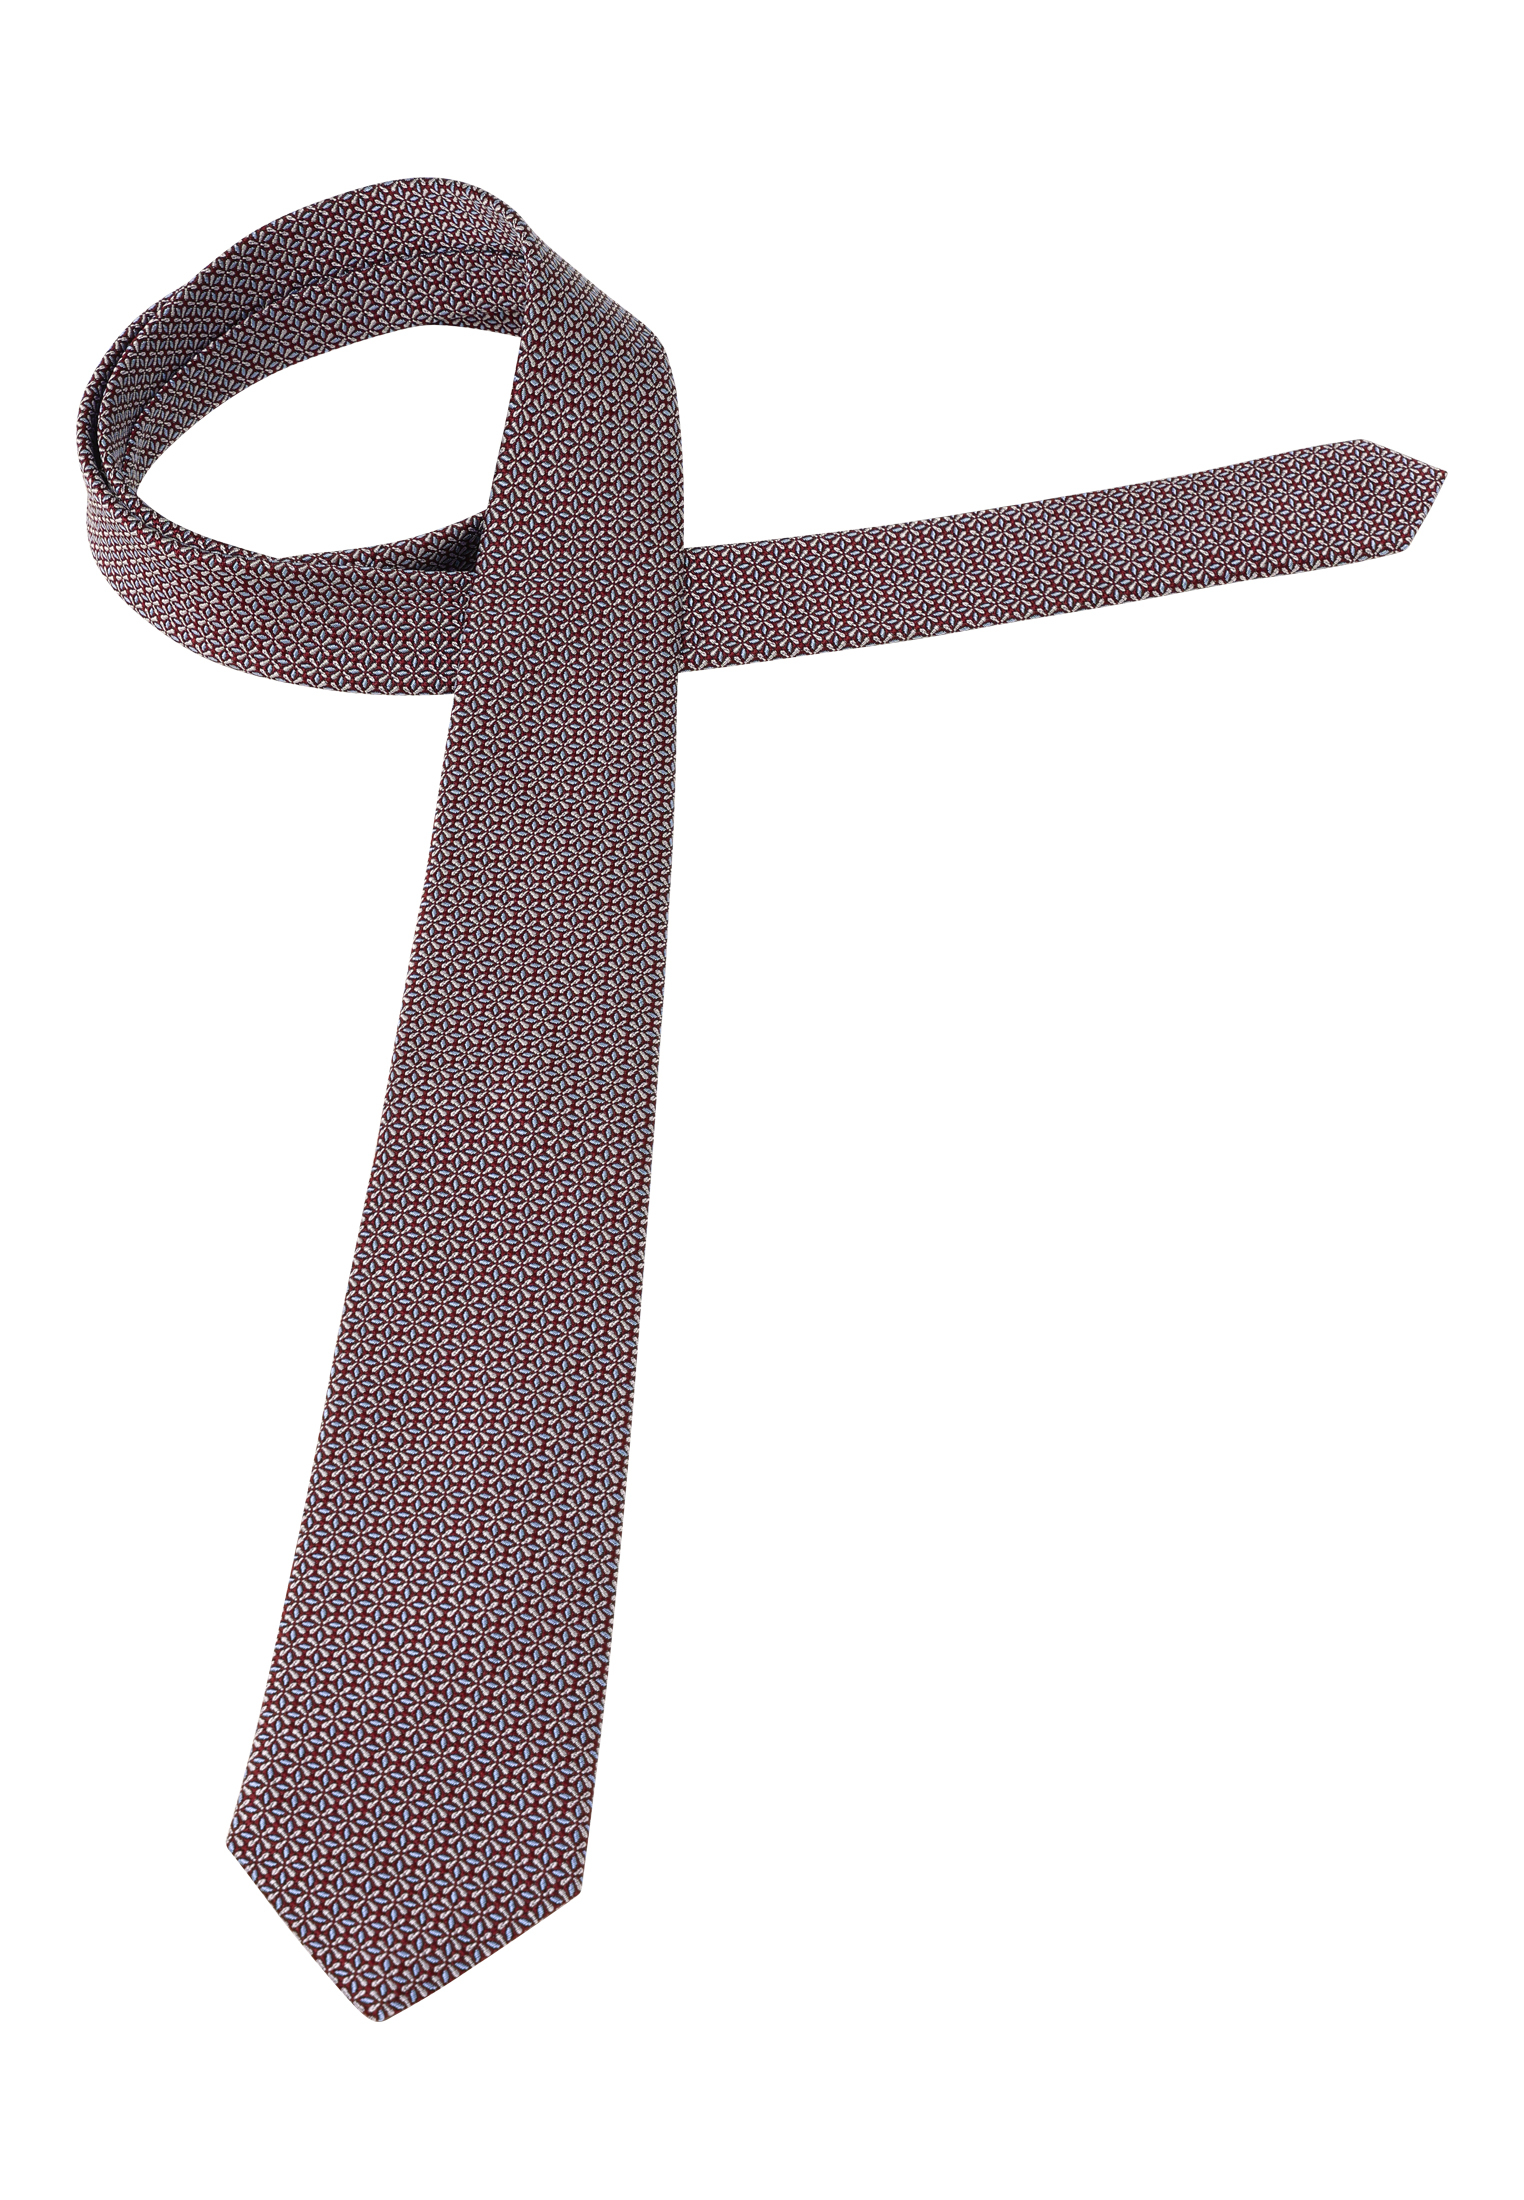 Krawatte in braun strukturiert | 142 1AC02043-02-91-142 | | braun